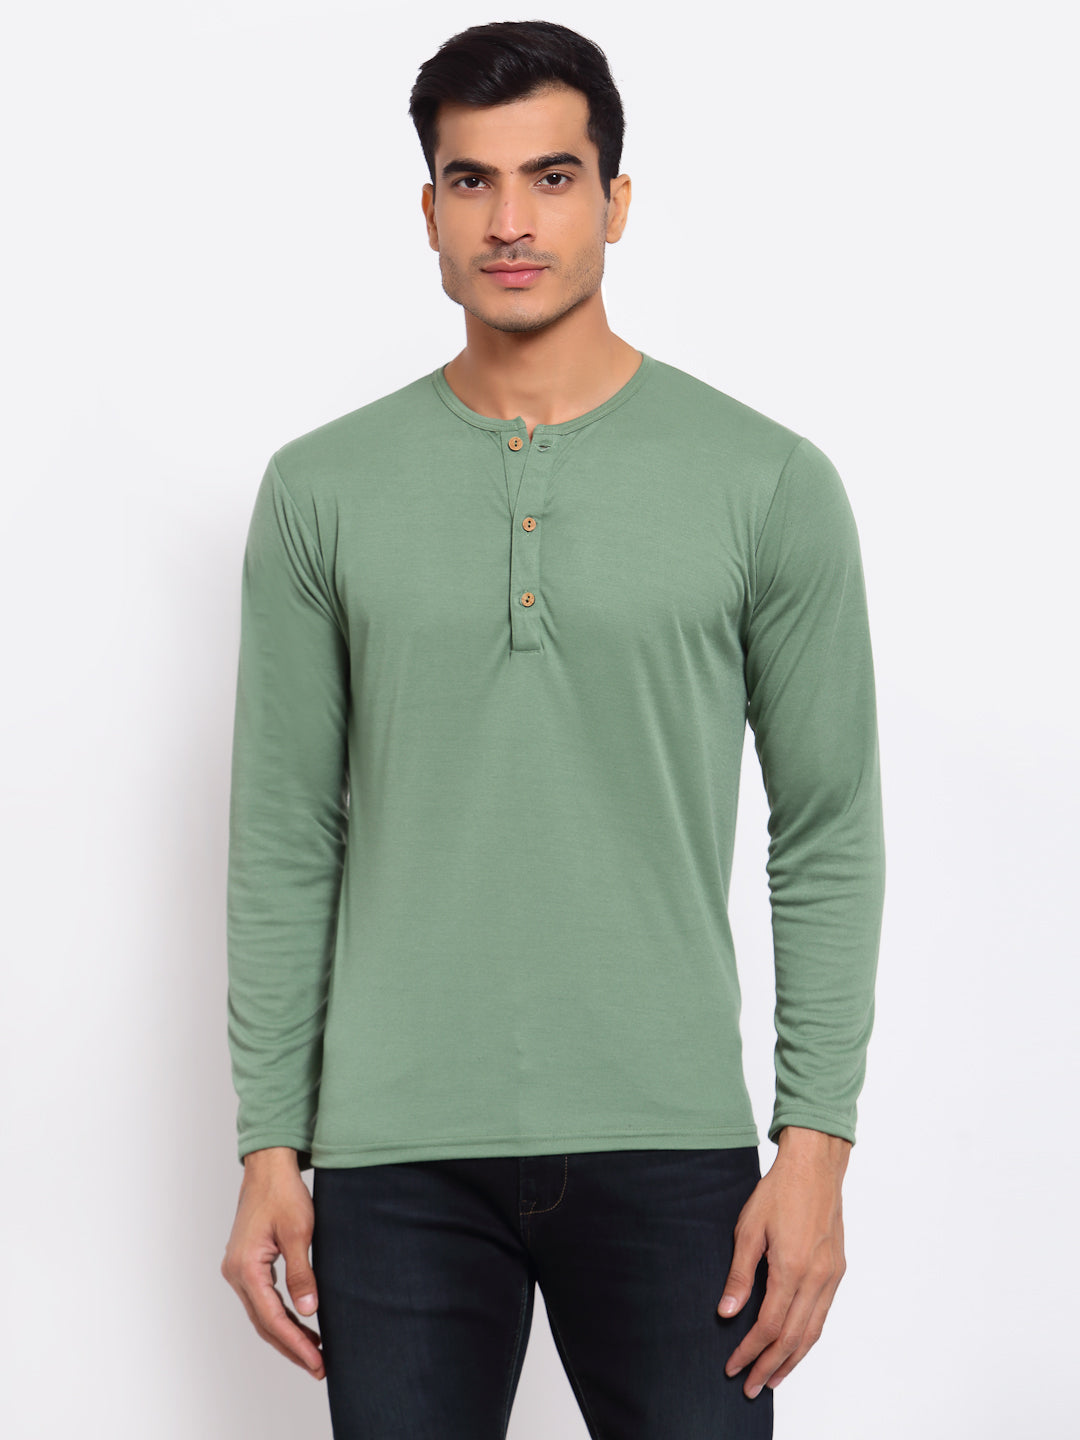 Plain Light Green Henley Full Sleeves T-shirt